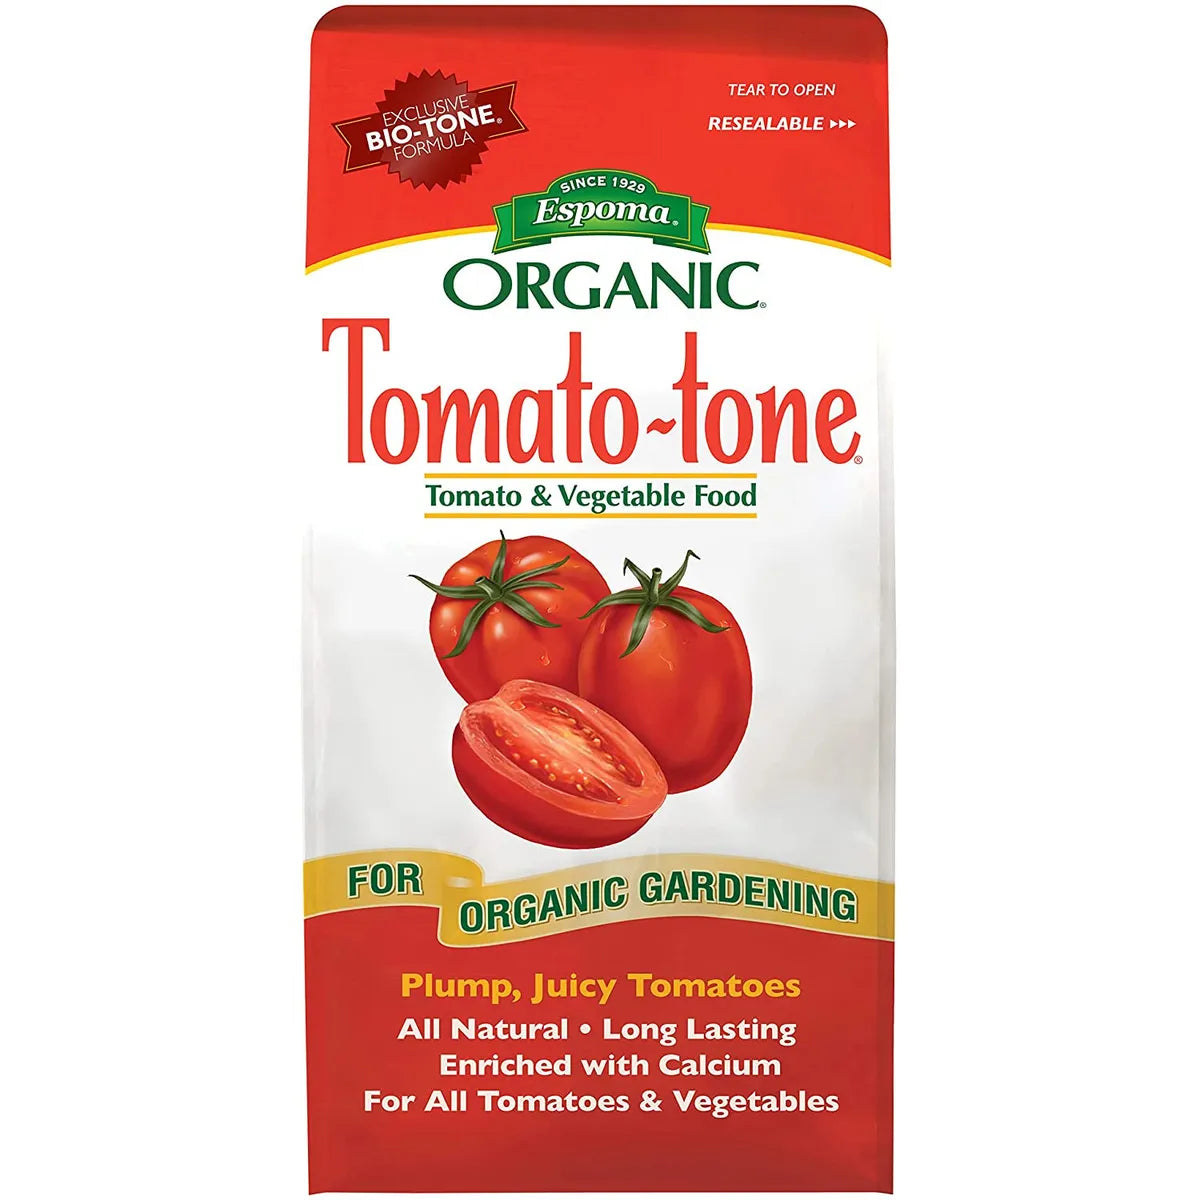 Organic granular tomato and veggie fertilizer. High in calcium